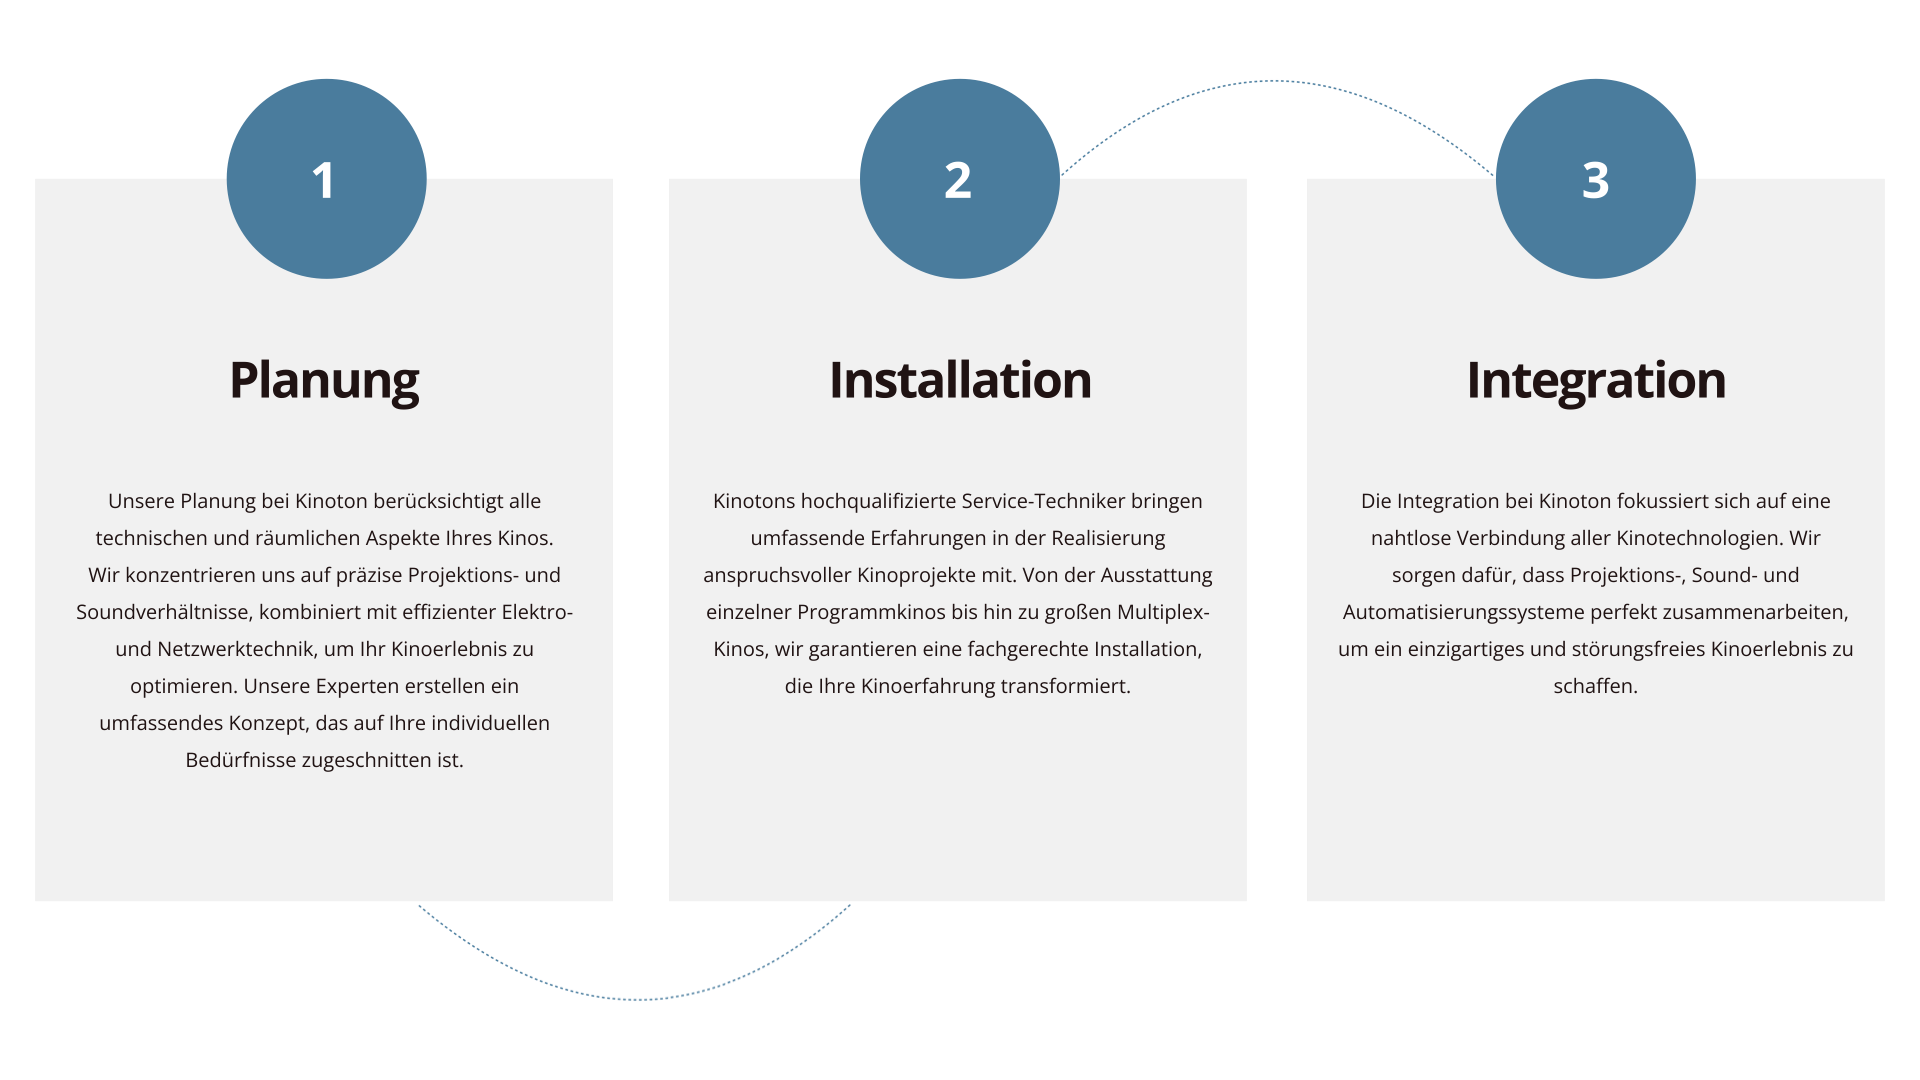 Infografik des Kinoton Planungsprozesses, bestehend aus drei Schritten: Planung, Installation, Integration, dargestellt mit nummerierten Kreisen und beschreibendem Text.